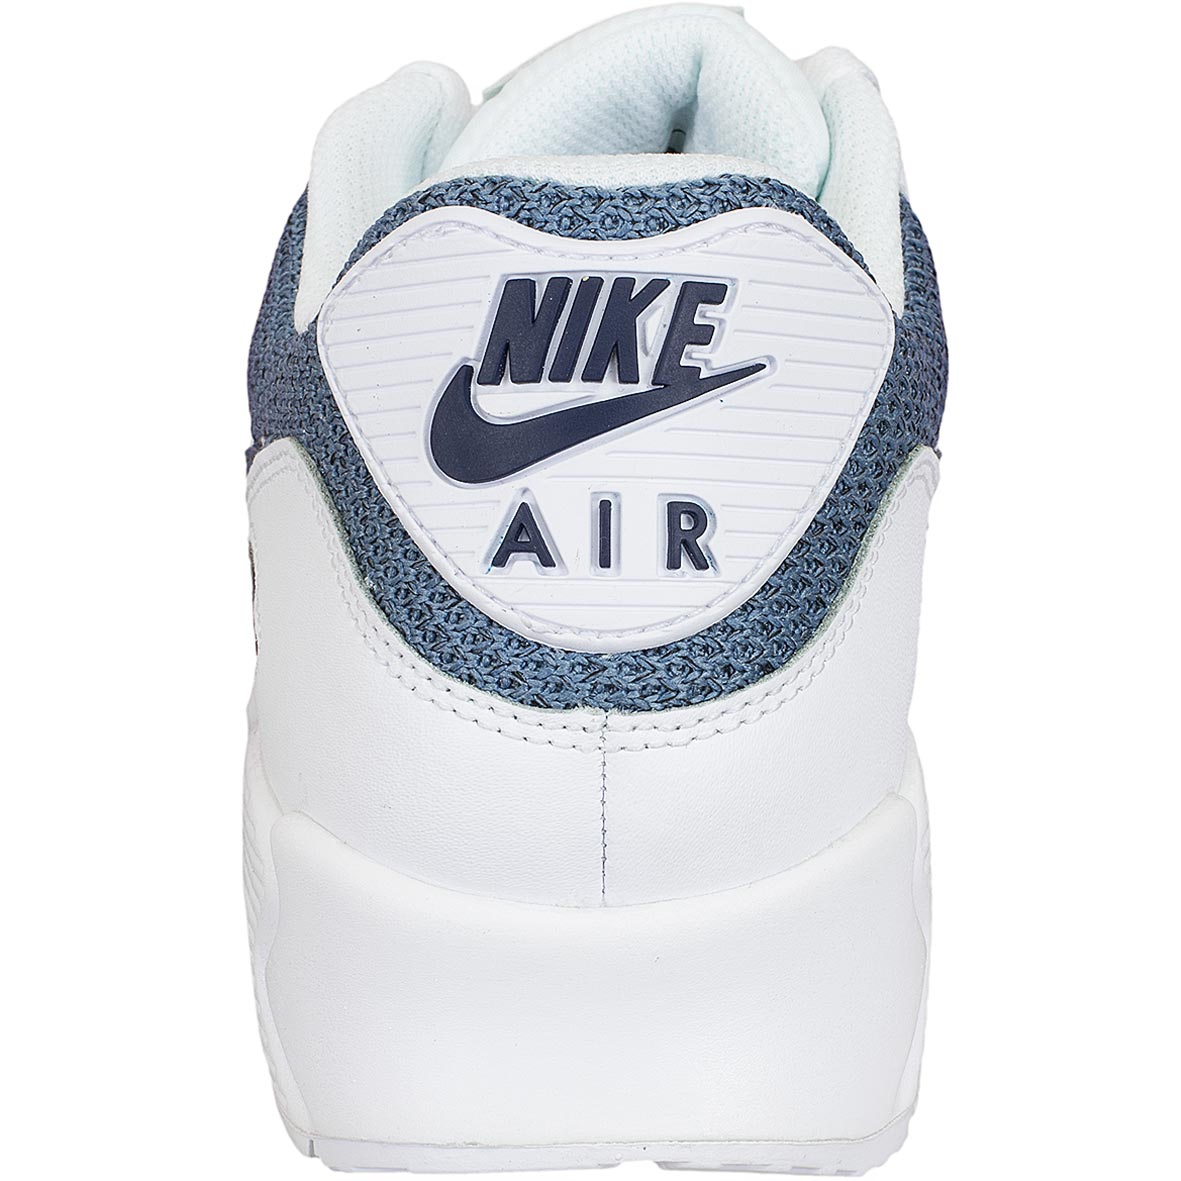 ☆ Nike Sneaker Air Max 90 Essential weiß/blau - hier bestellen!